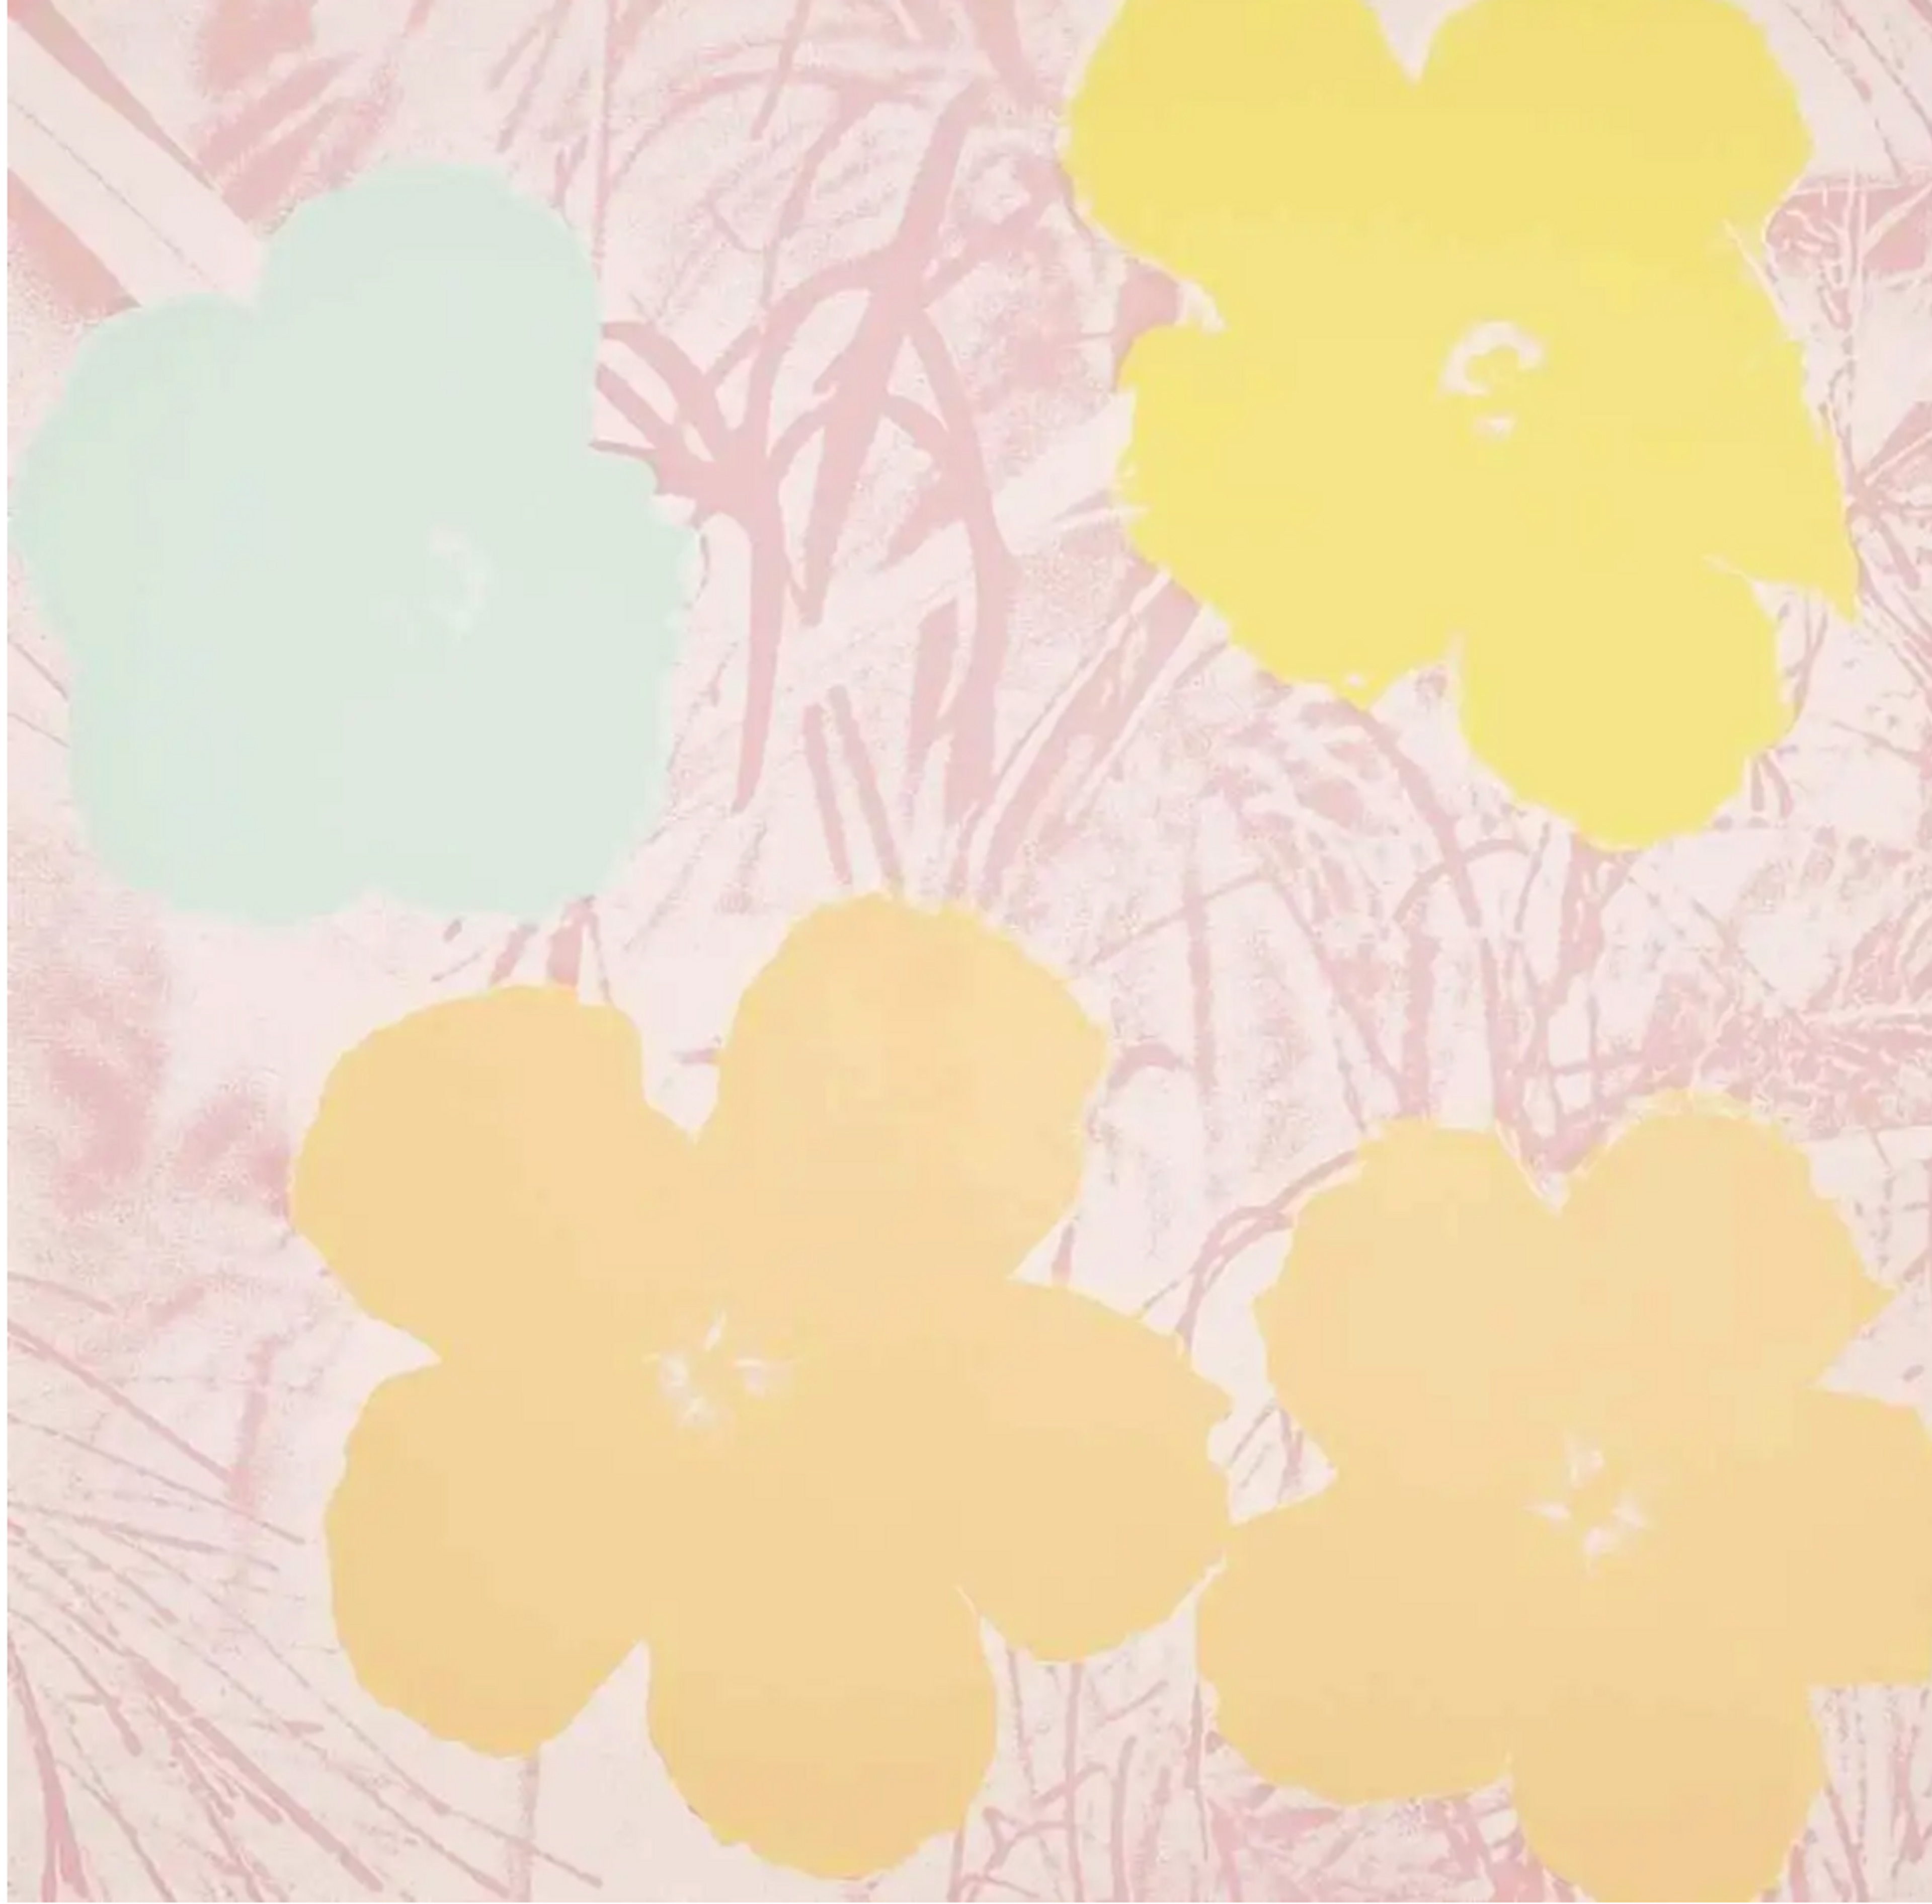 Flowers (F. & S. II.70) by Andy Warhol - MyArtBroker